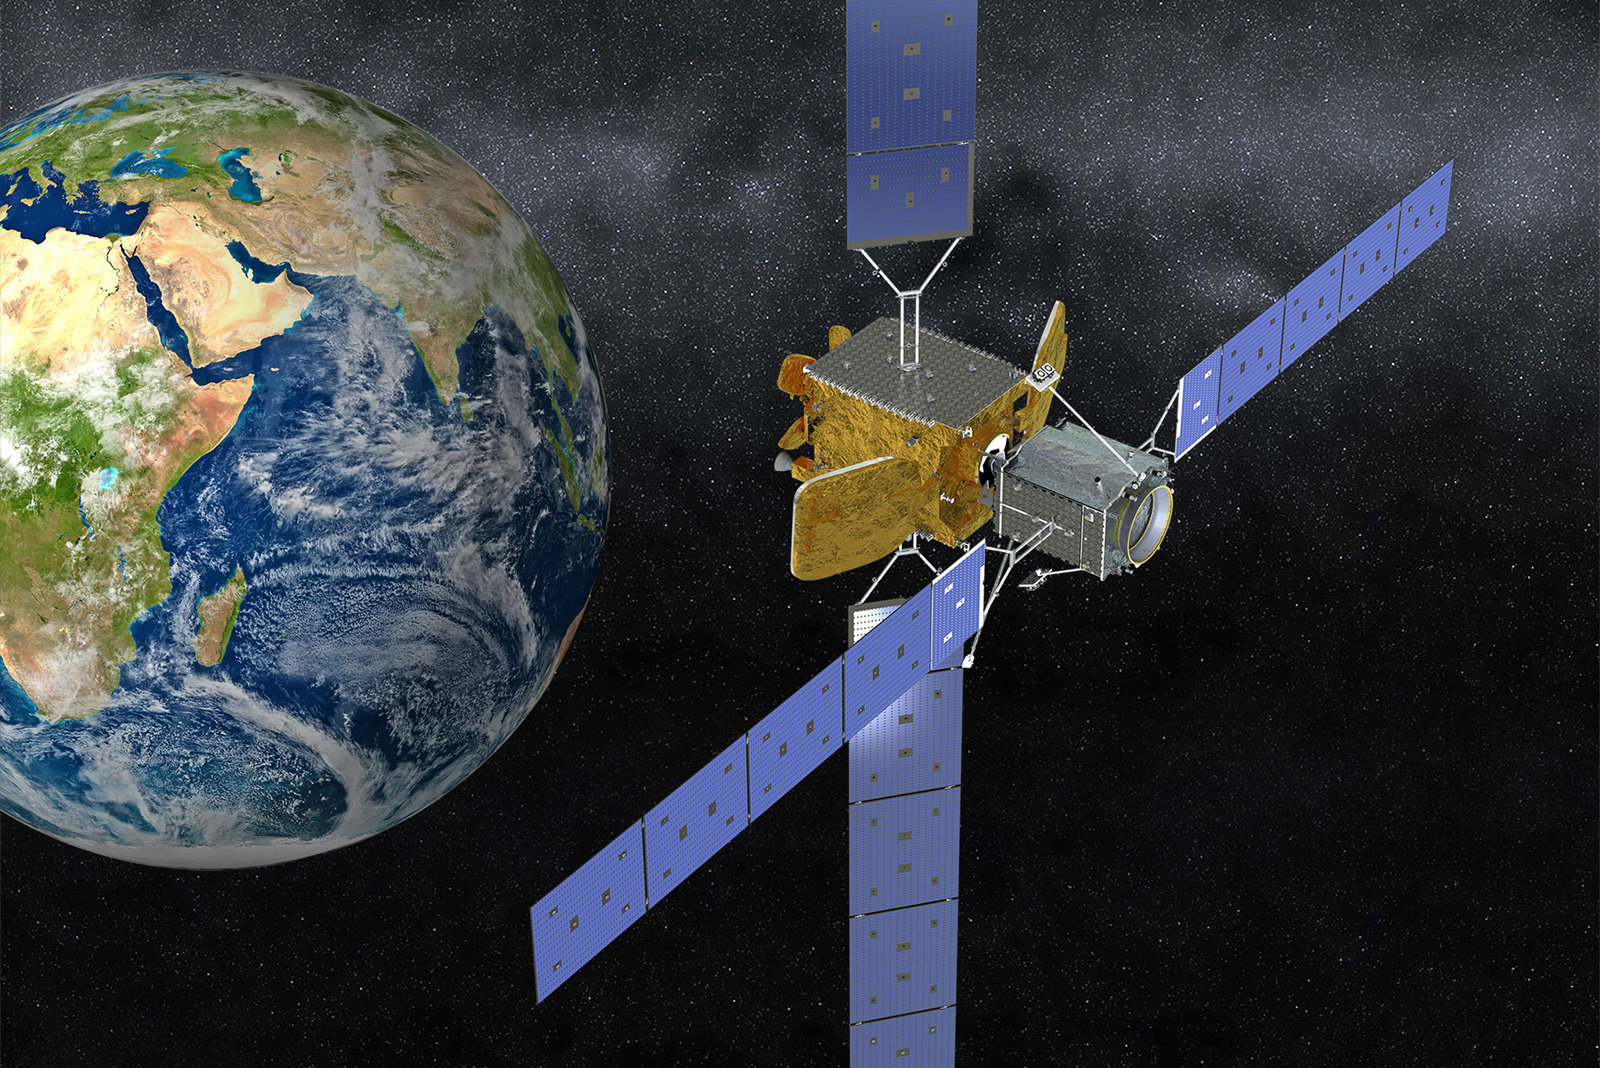 Tankowanie satelitarne od Northrop rozpocznie się 9 października